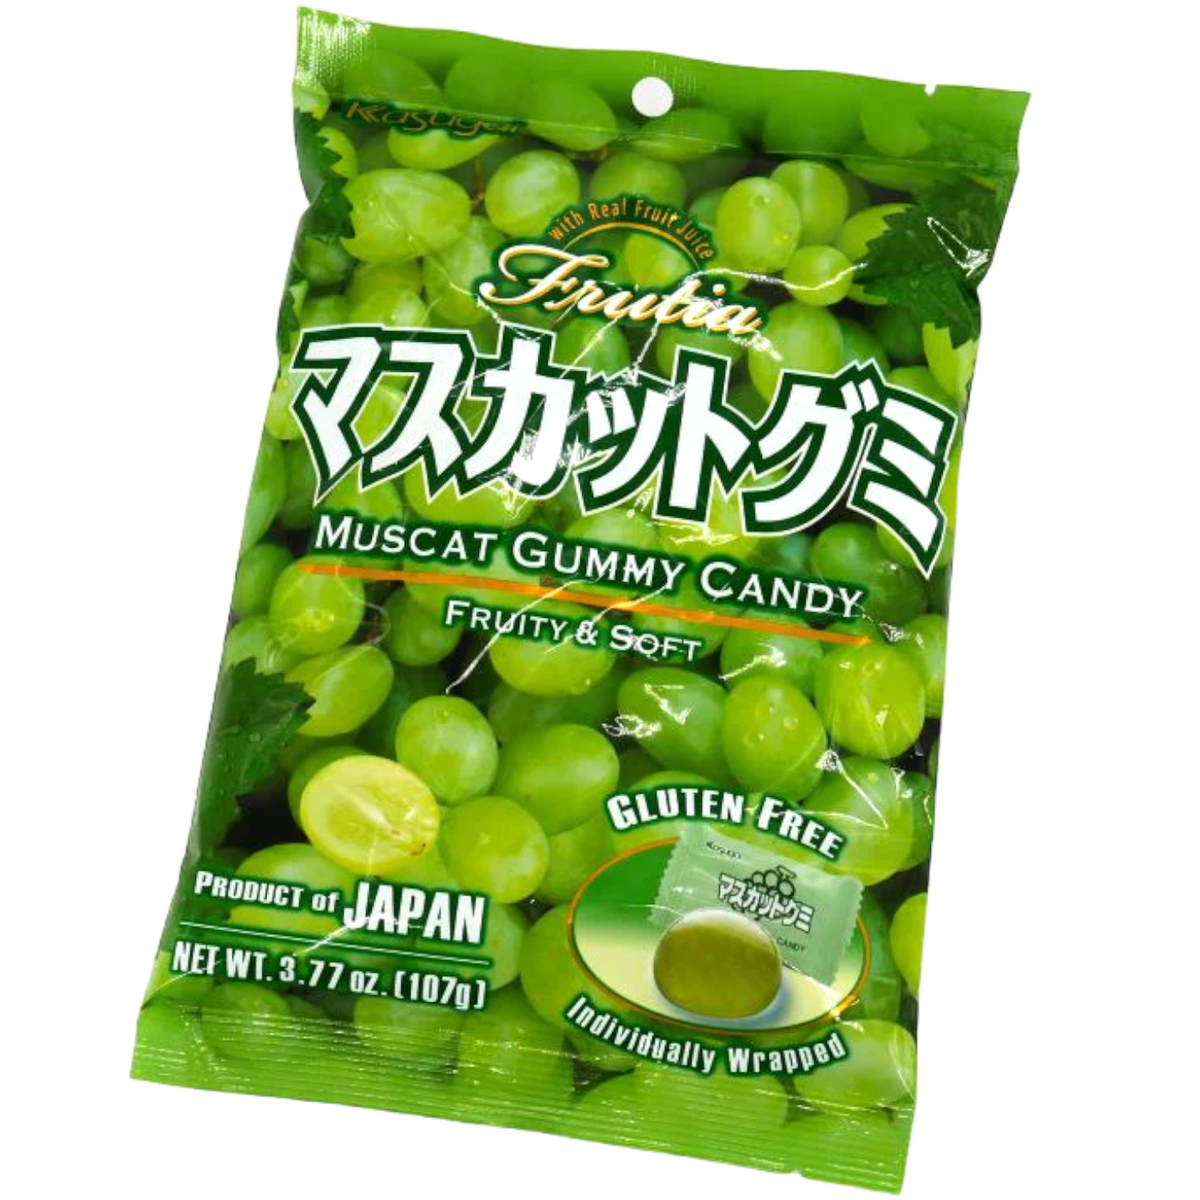 Kasugai Muscat Gummy Candy (Japan) - 3.77oz (107 g) | Poppin Candy